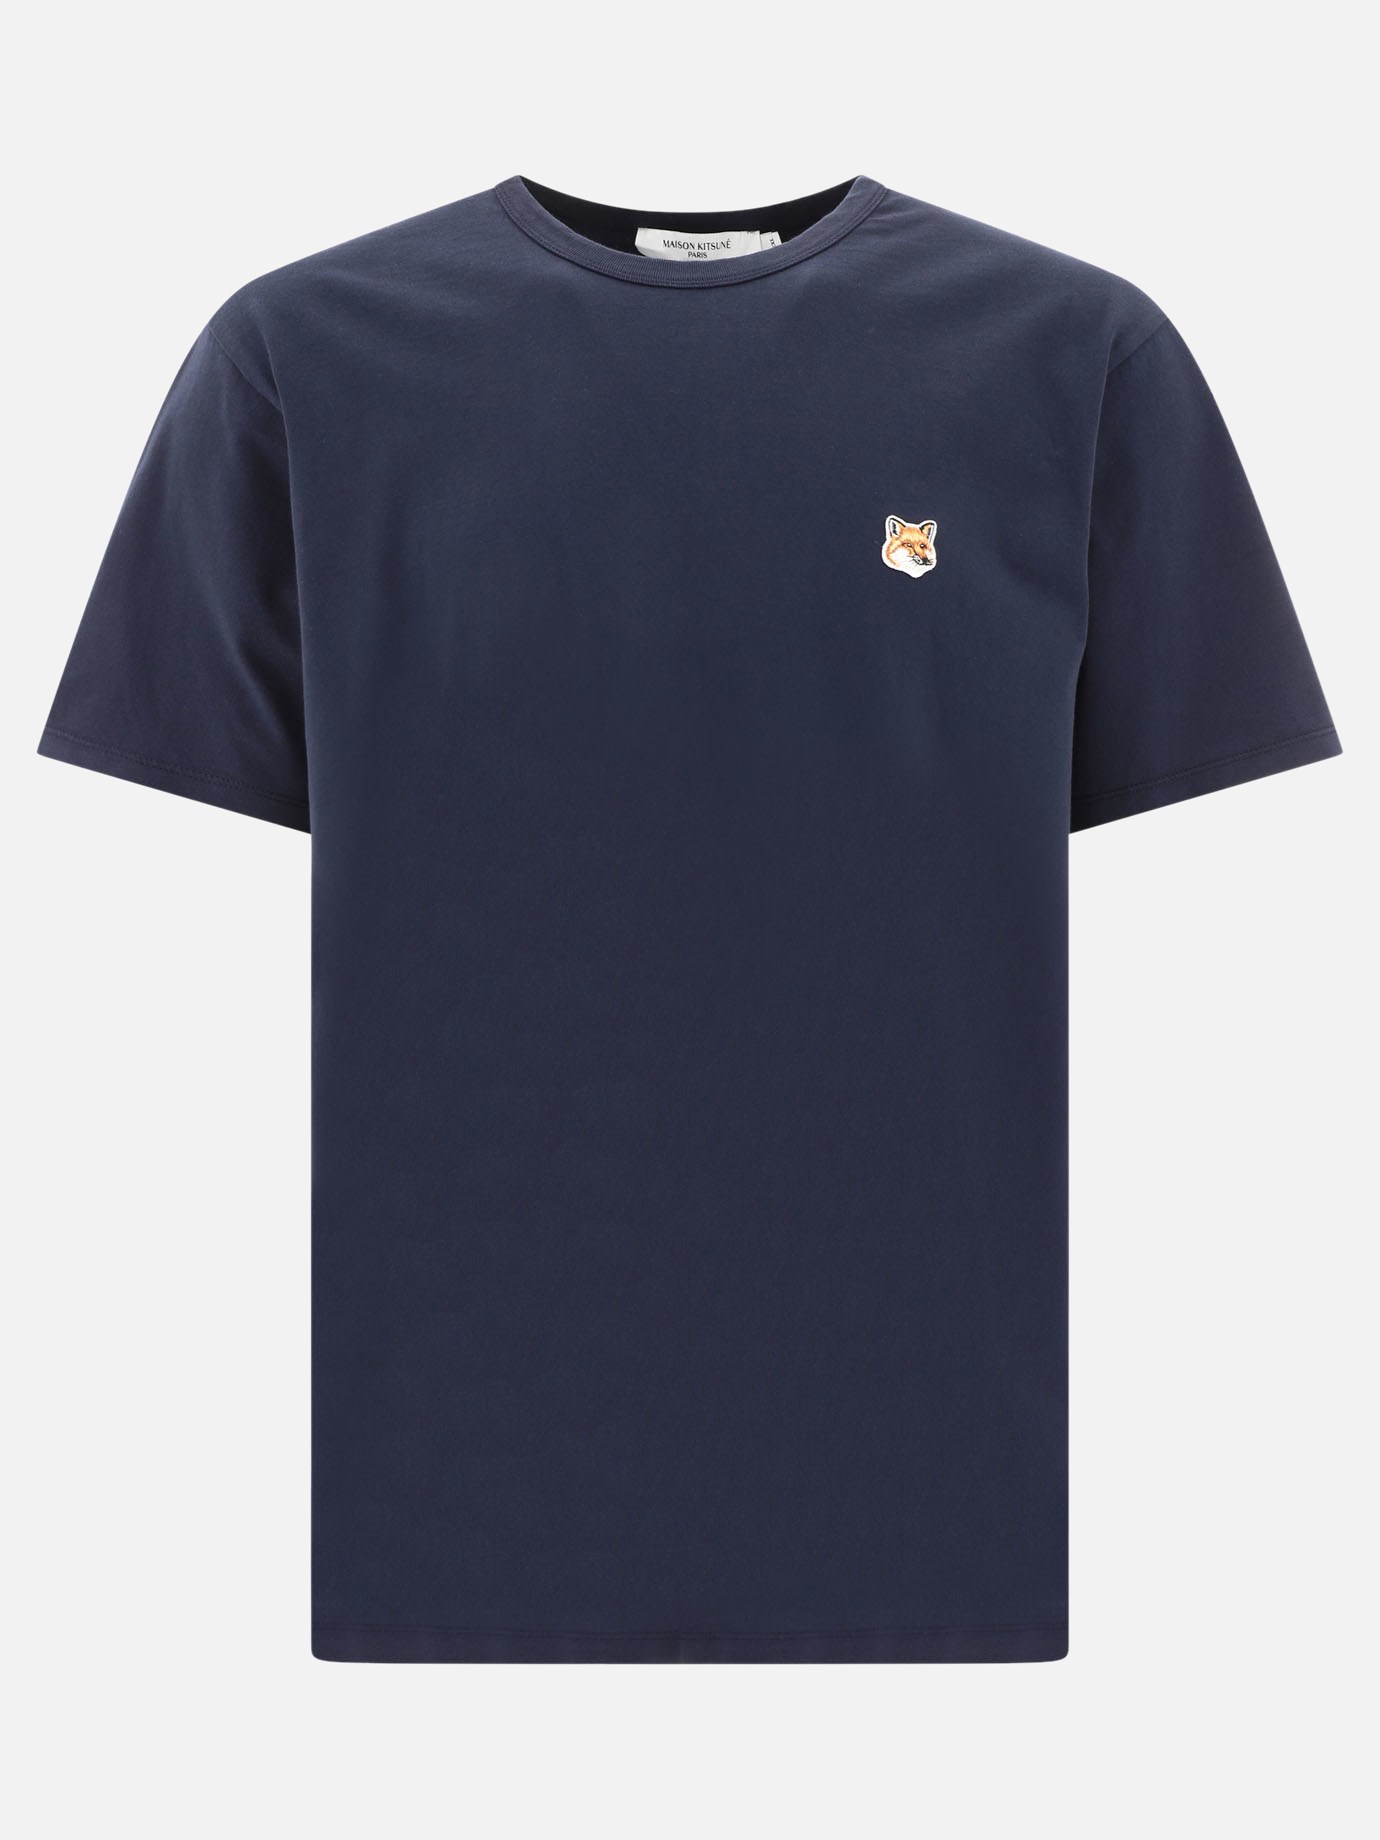  Fox Head  t-shirtby Maison Kitsuné - 4